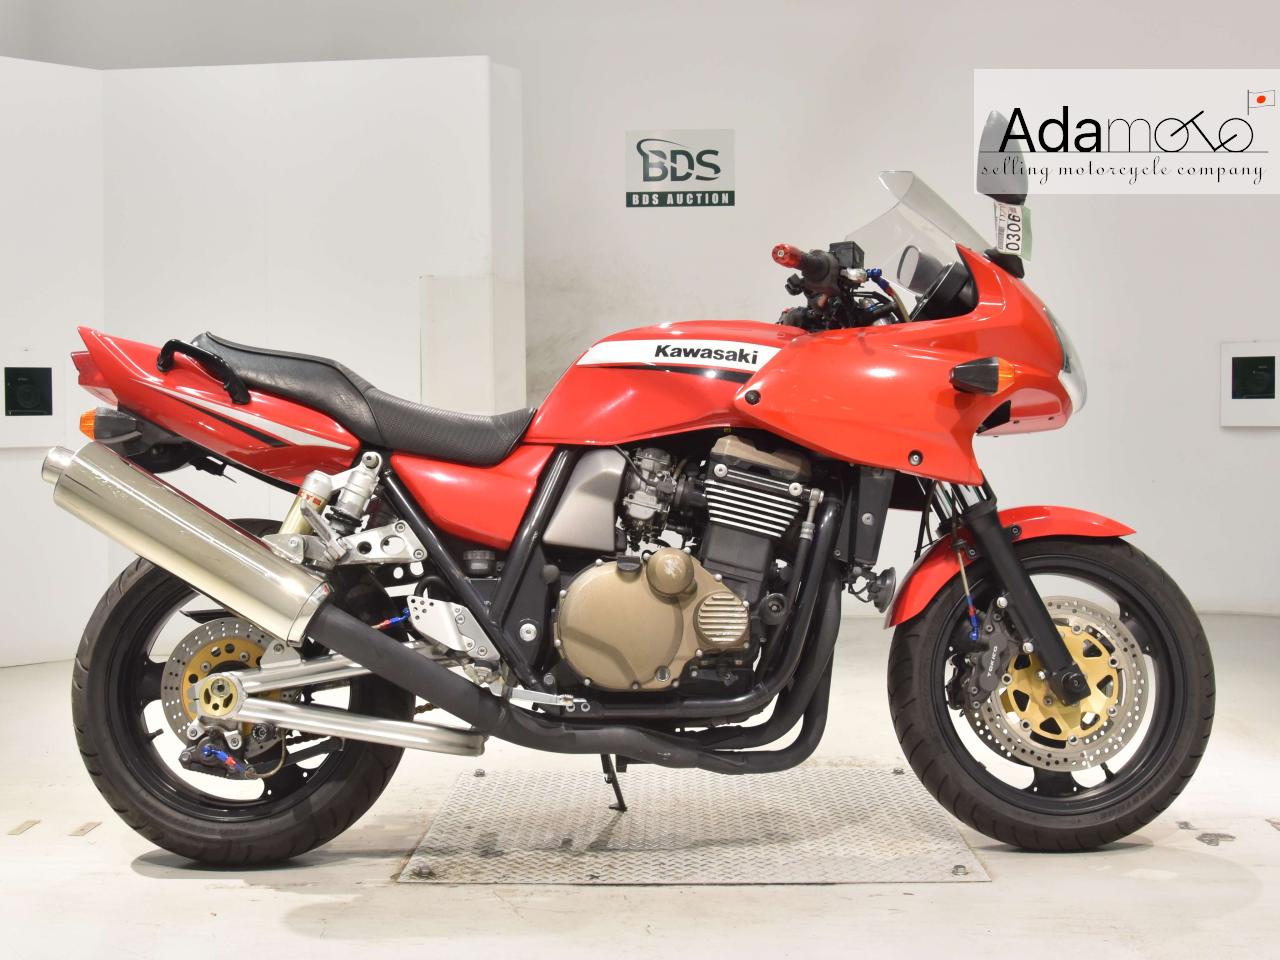 Kawasaki ZRX1200S - Adamoto - Motorcycles from Japan